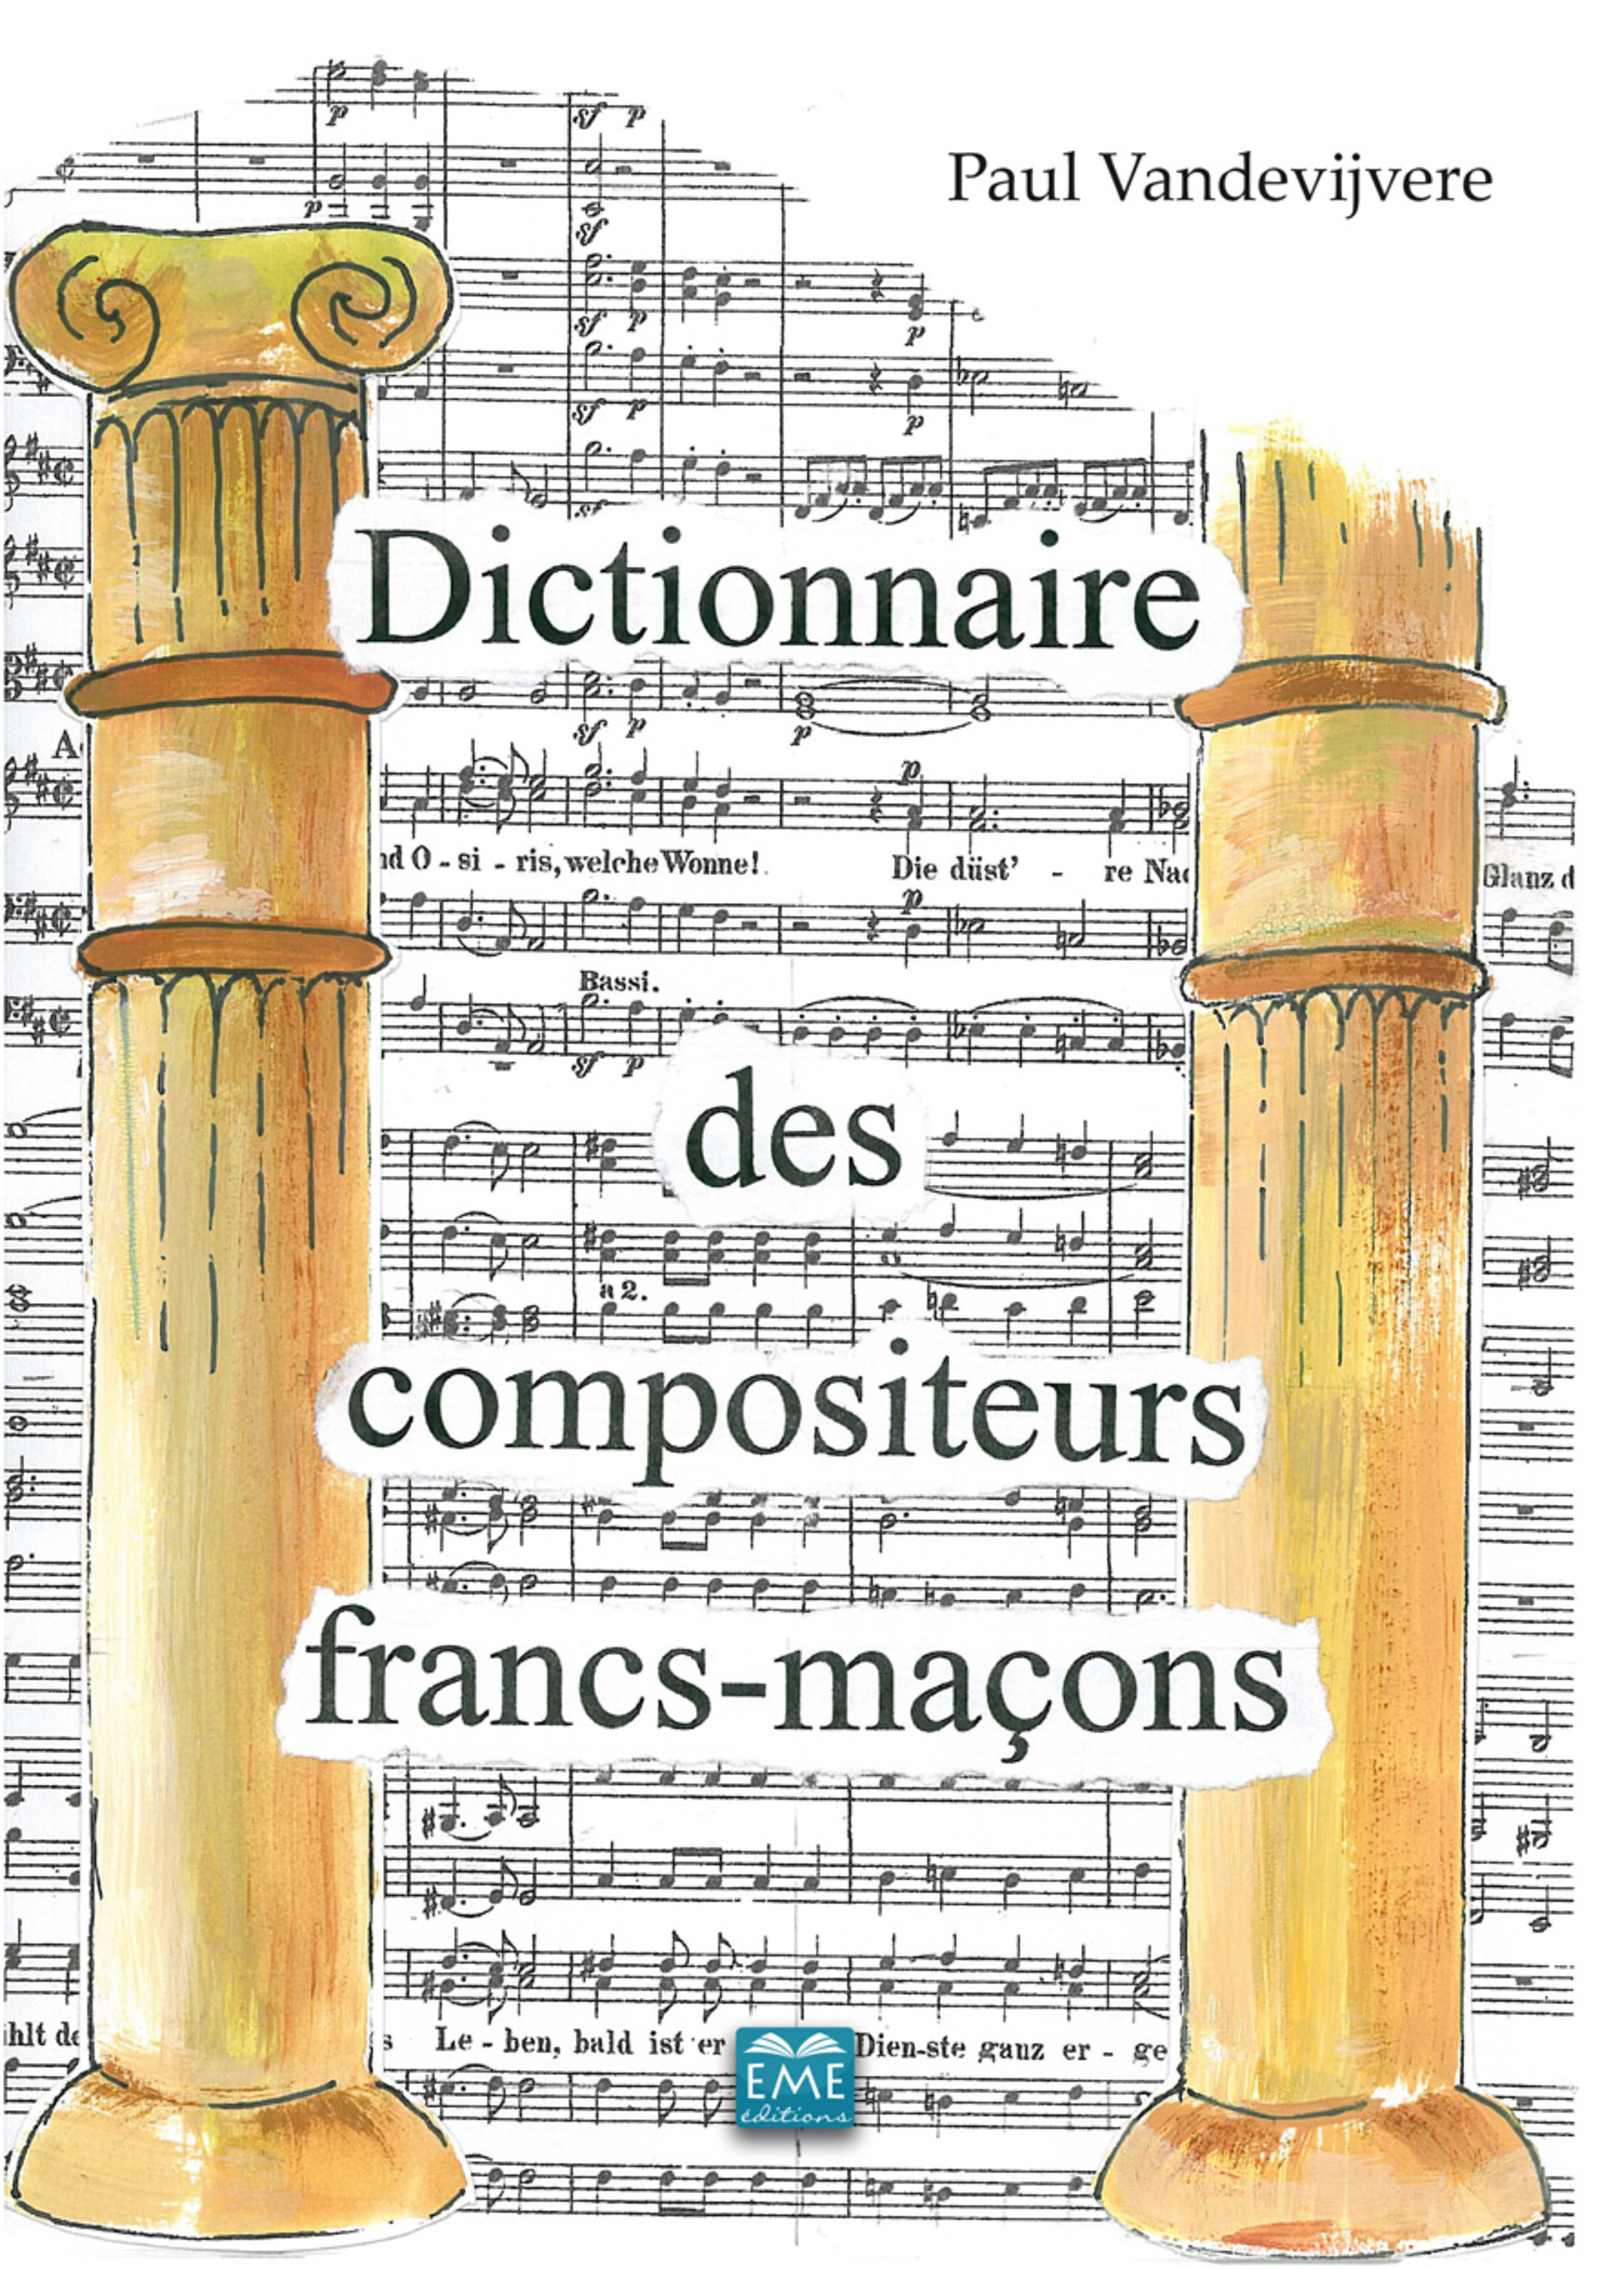 Dictionnaire des compositeurs francs-maçons, Un lexique maçonnique (9782806631381-front-cover)